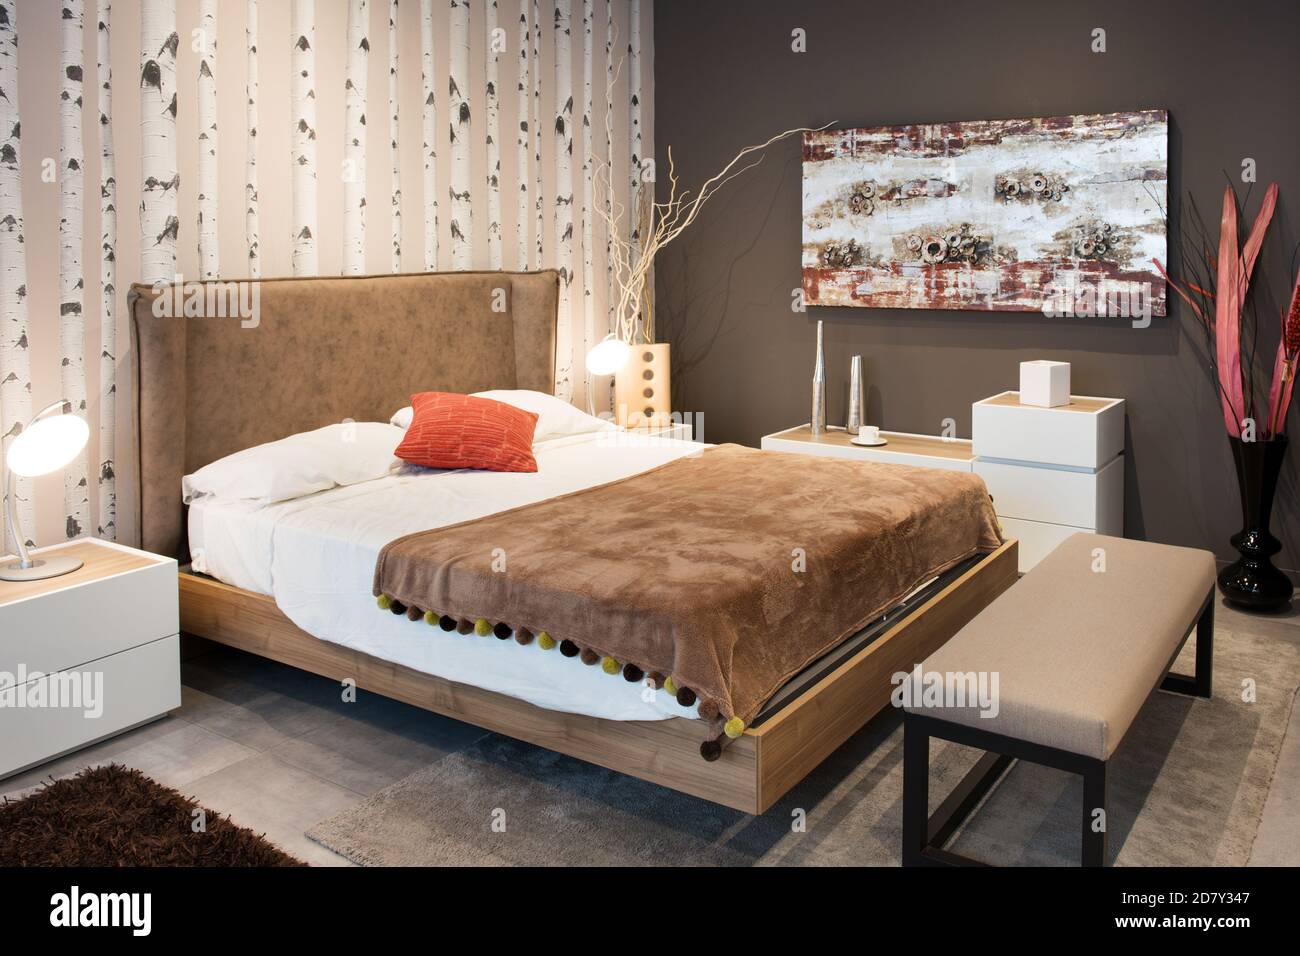 Interieur eines eleganten, modernen Schlafzimmers mit großem Doppeldiwan Stilbett mit gepolstertem braunem Kopfteil und Überwurf-Teppich mit Passende braune Tapete o Stockfoto